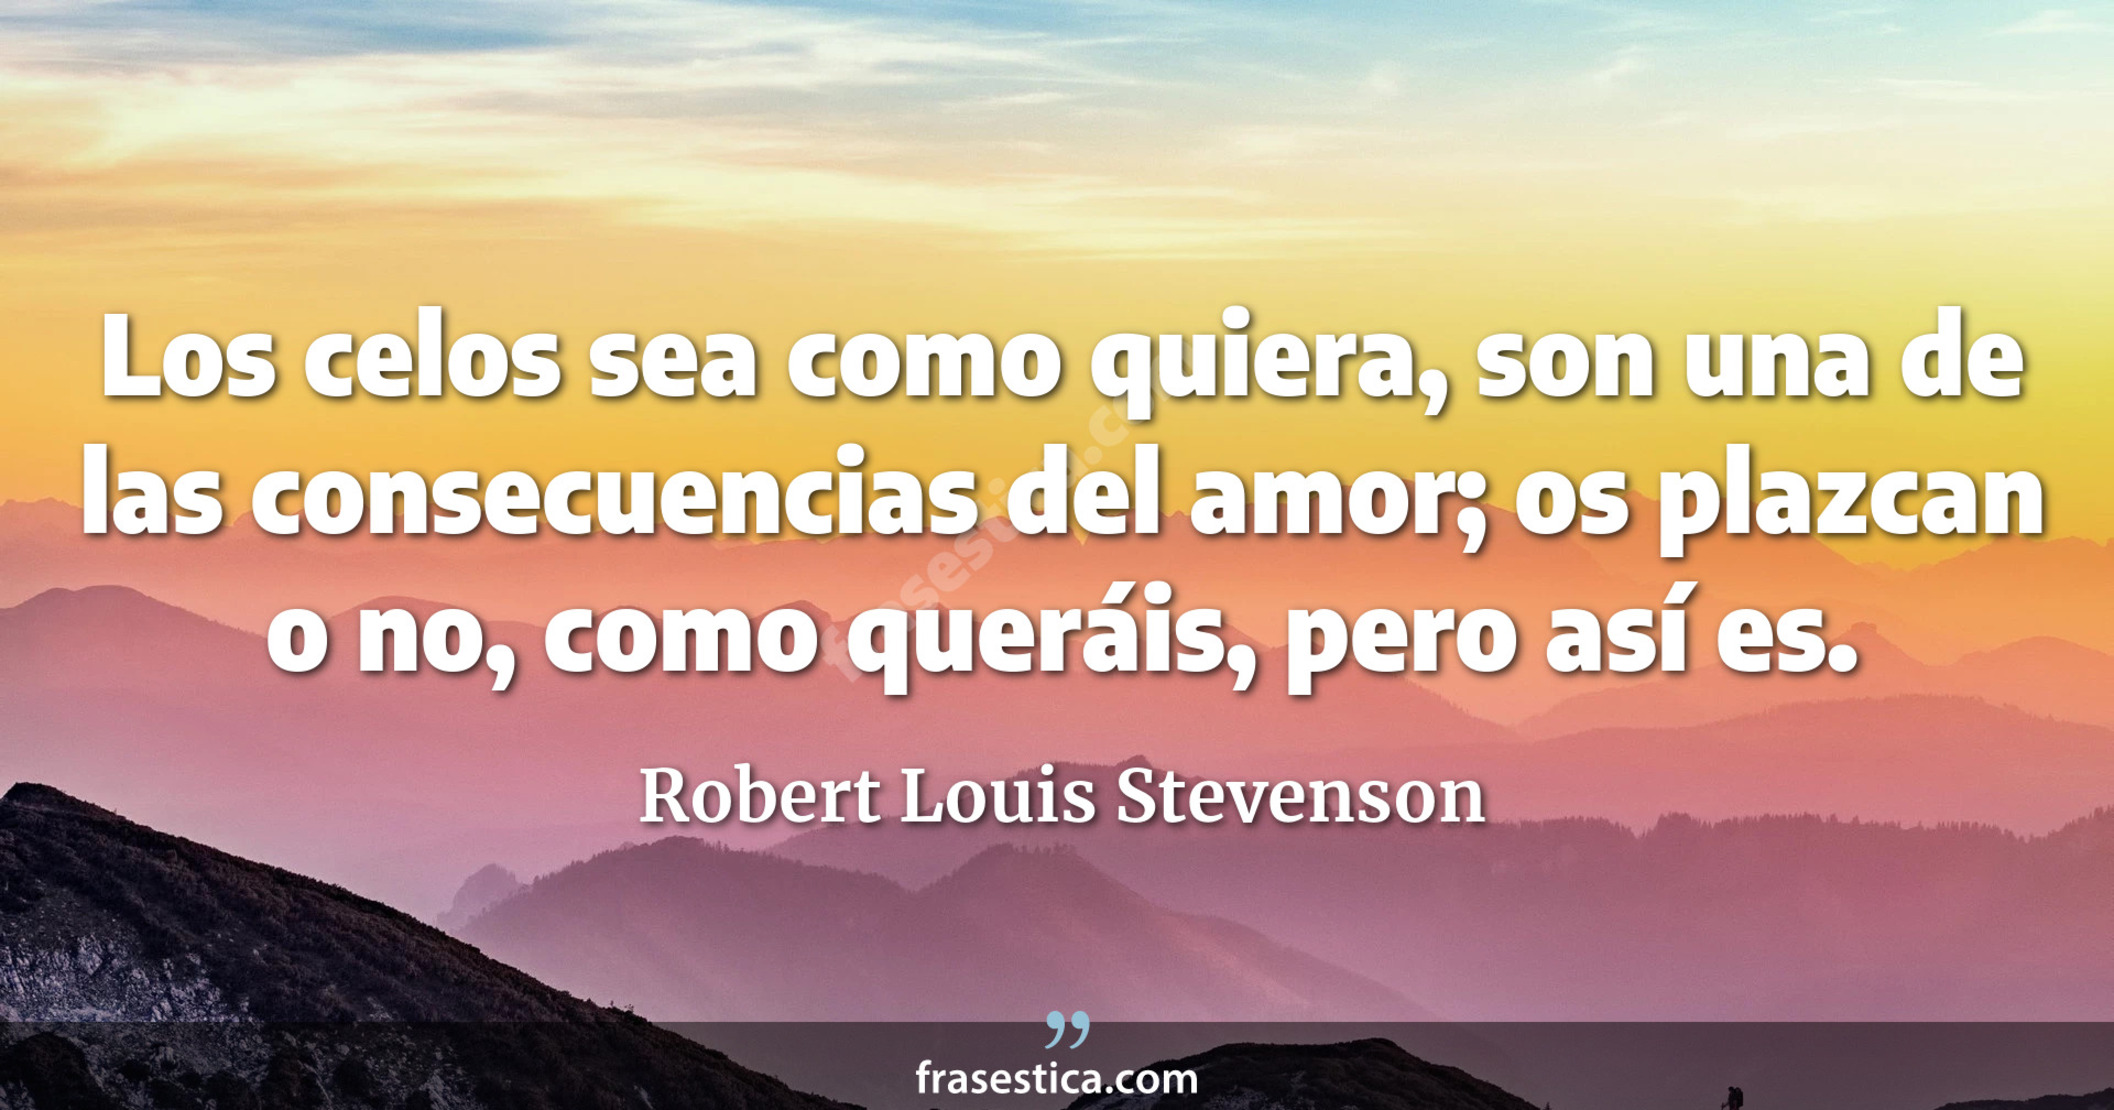 Los celos sea como quiera, son una de las consecuencias del amor; os plazcan o no, como queráis, pero así es. - Robert Louis Stevenson